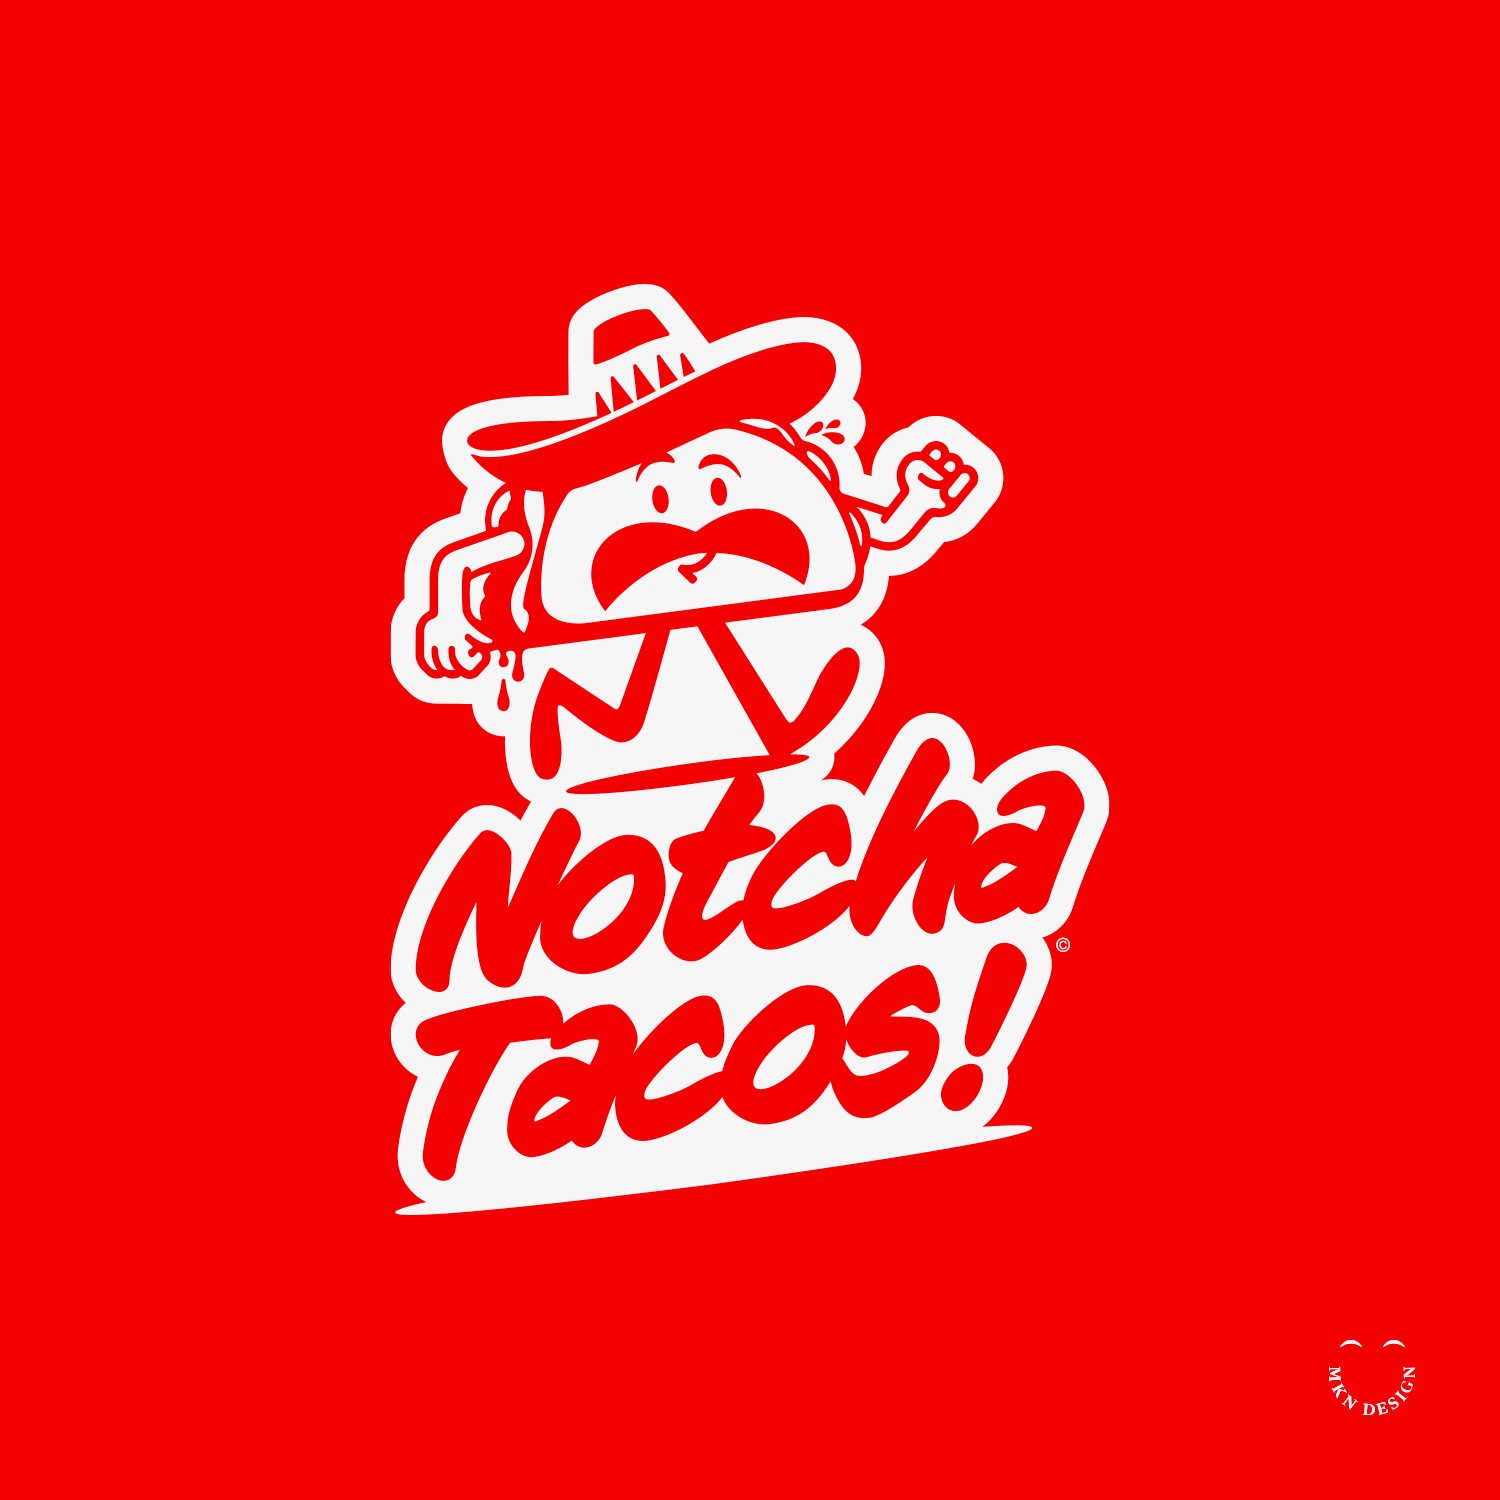 Notcha_Tacos_SEC_3.png